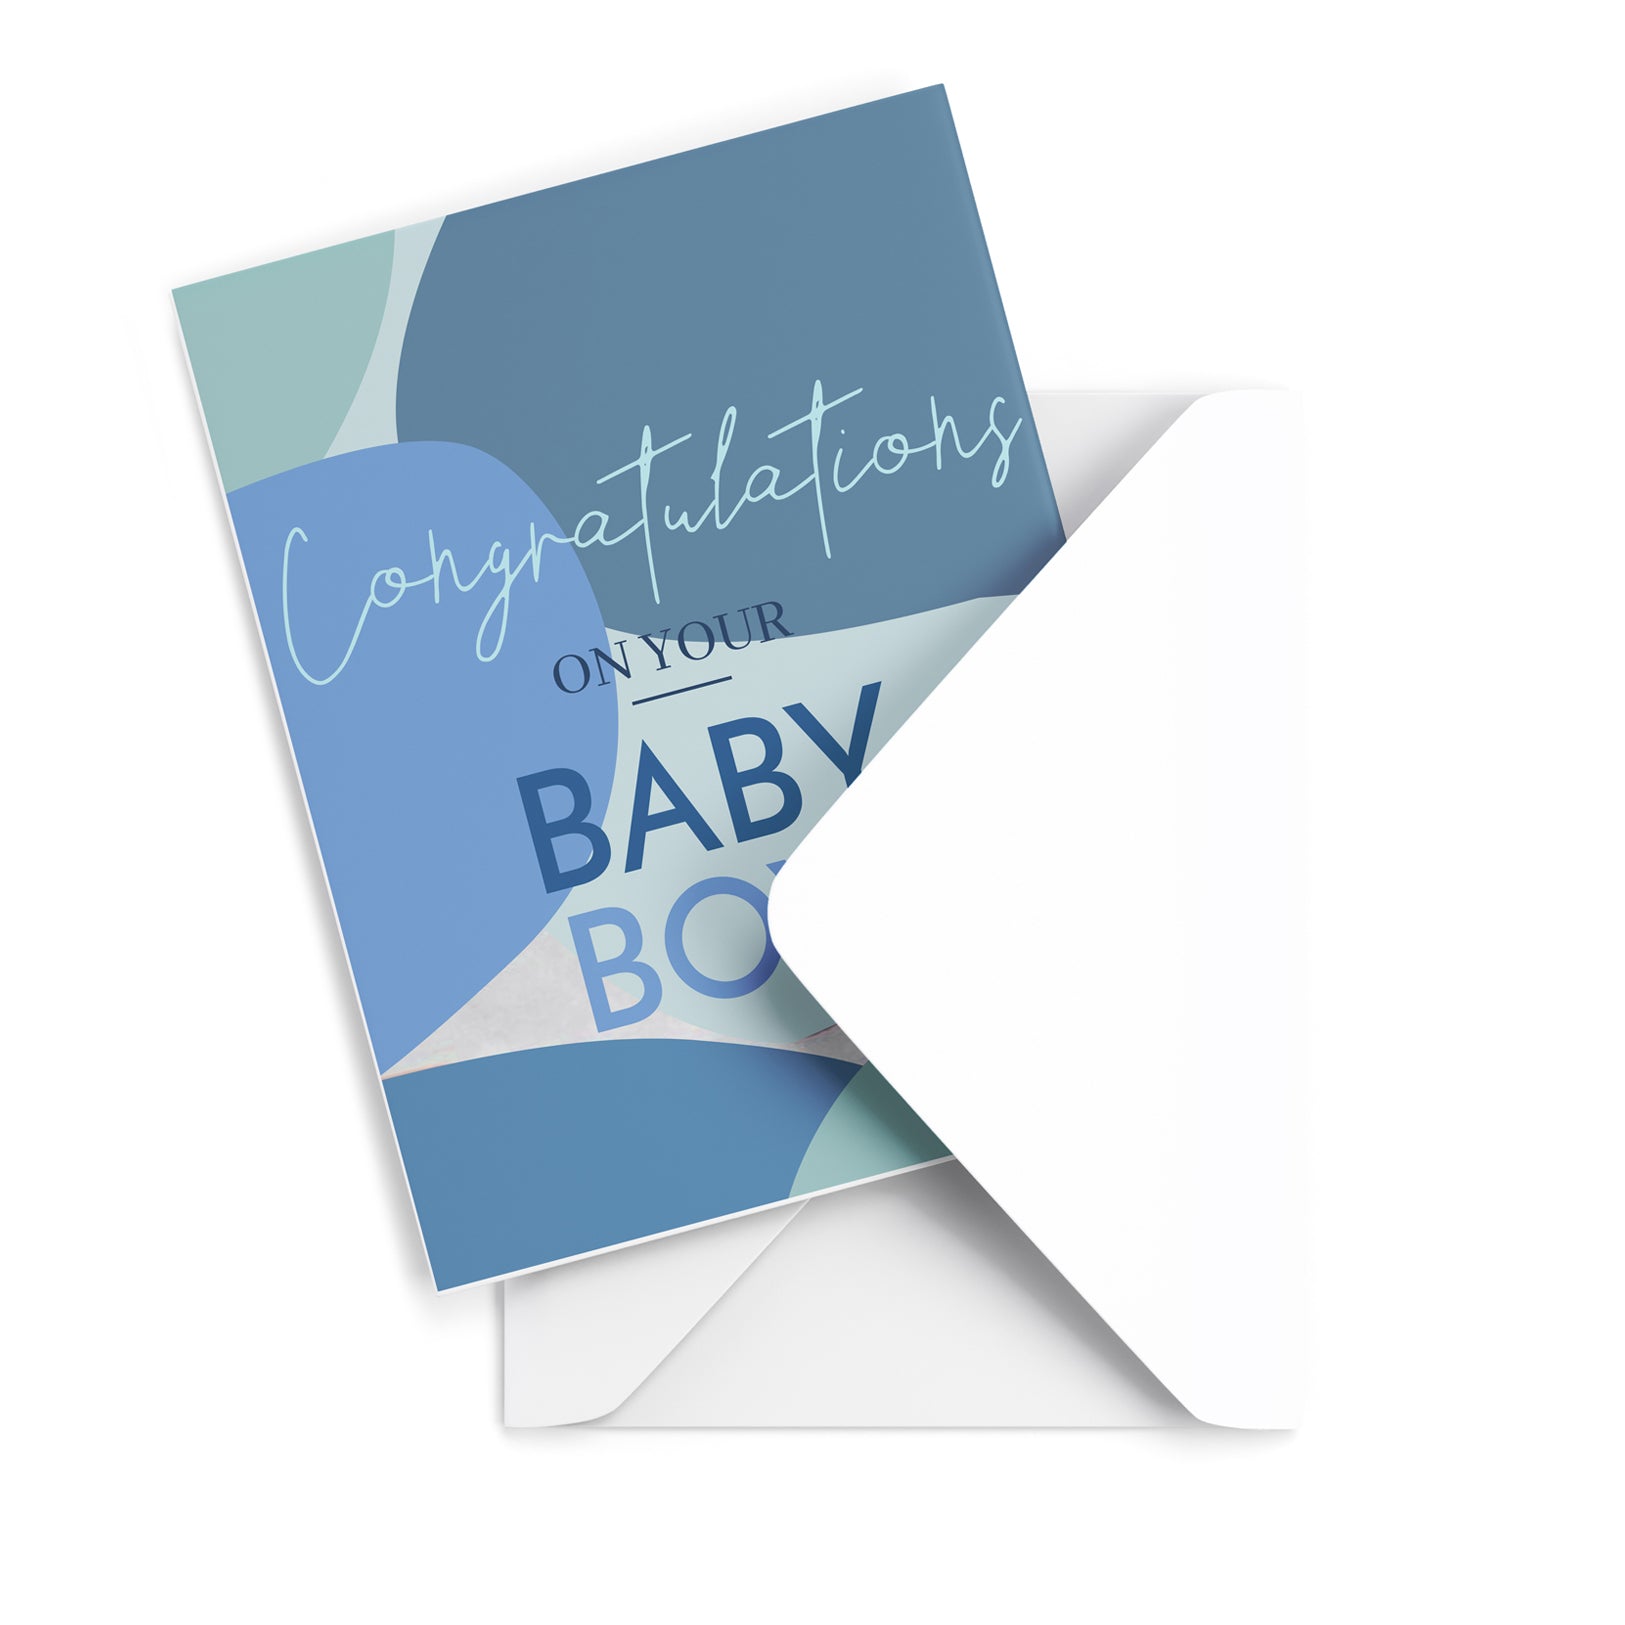 Baby Boy Greeting Card